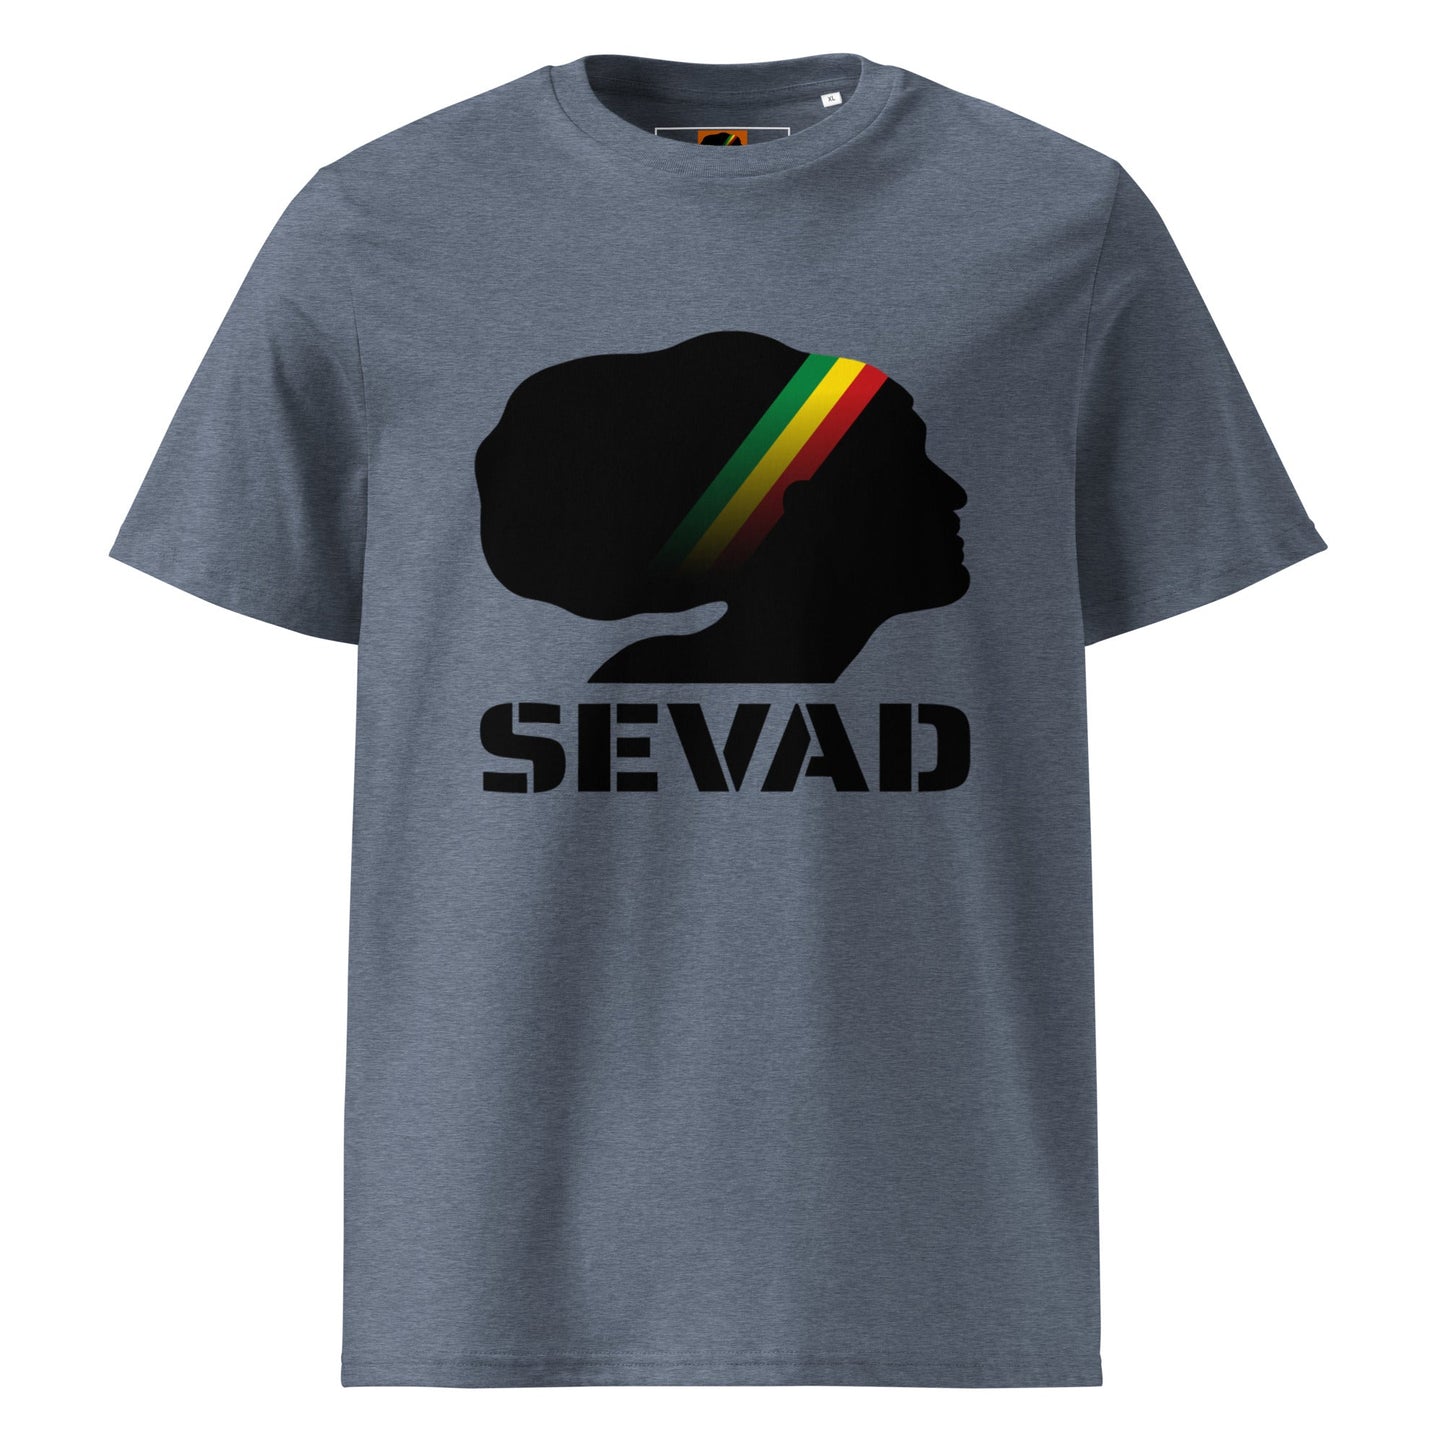 SEVAD: Unisex organic cotton t-shirt - SEVAD MUSIC HOUSE - T-Shirt - SEVAD MUSIC HOUSE - 7078733_14949 - Dark Heather Blue - S - SEVAD: Unisex organic cotton t-shirt